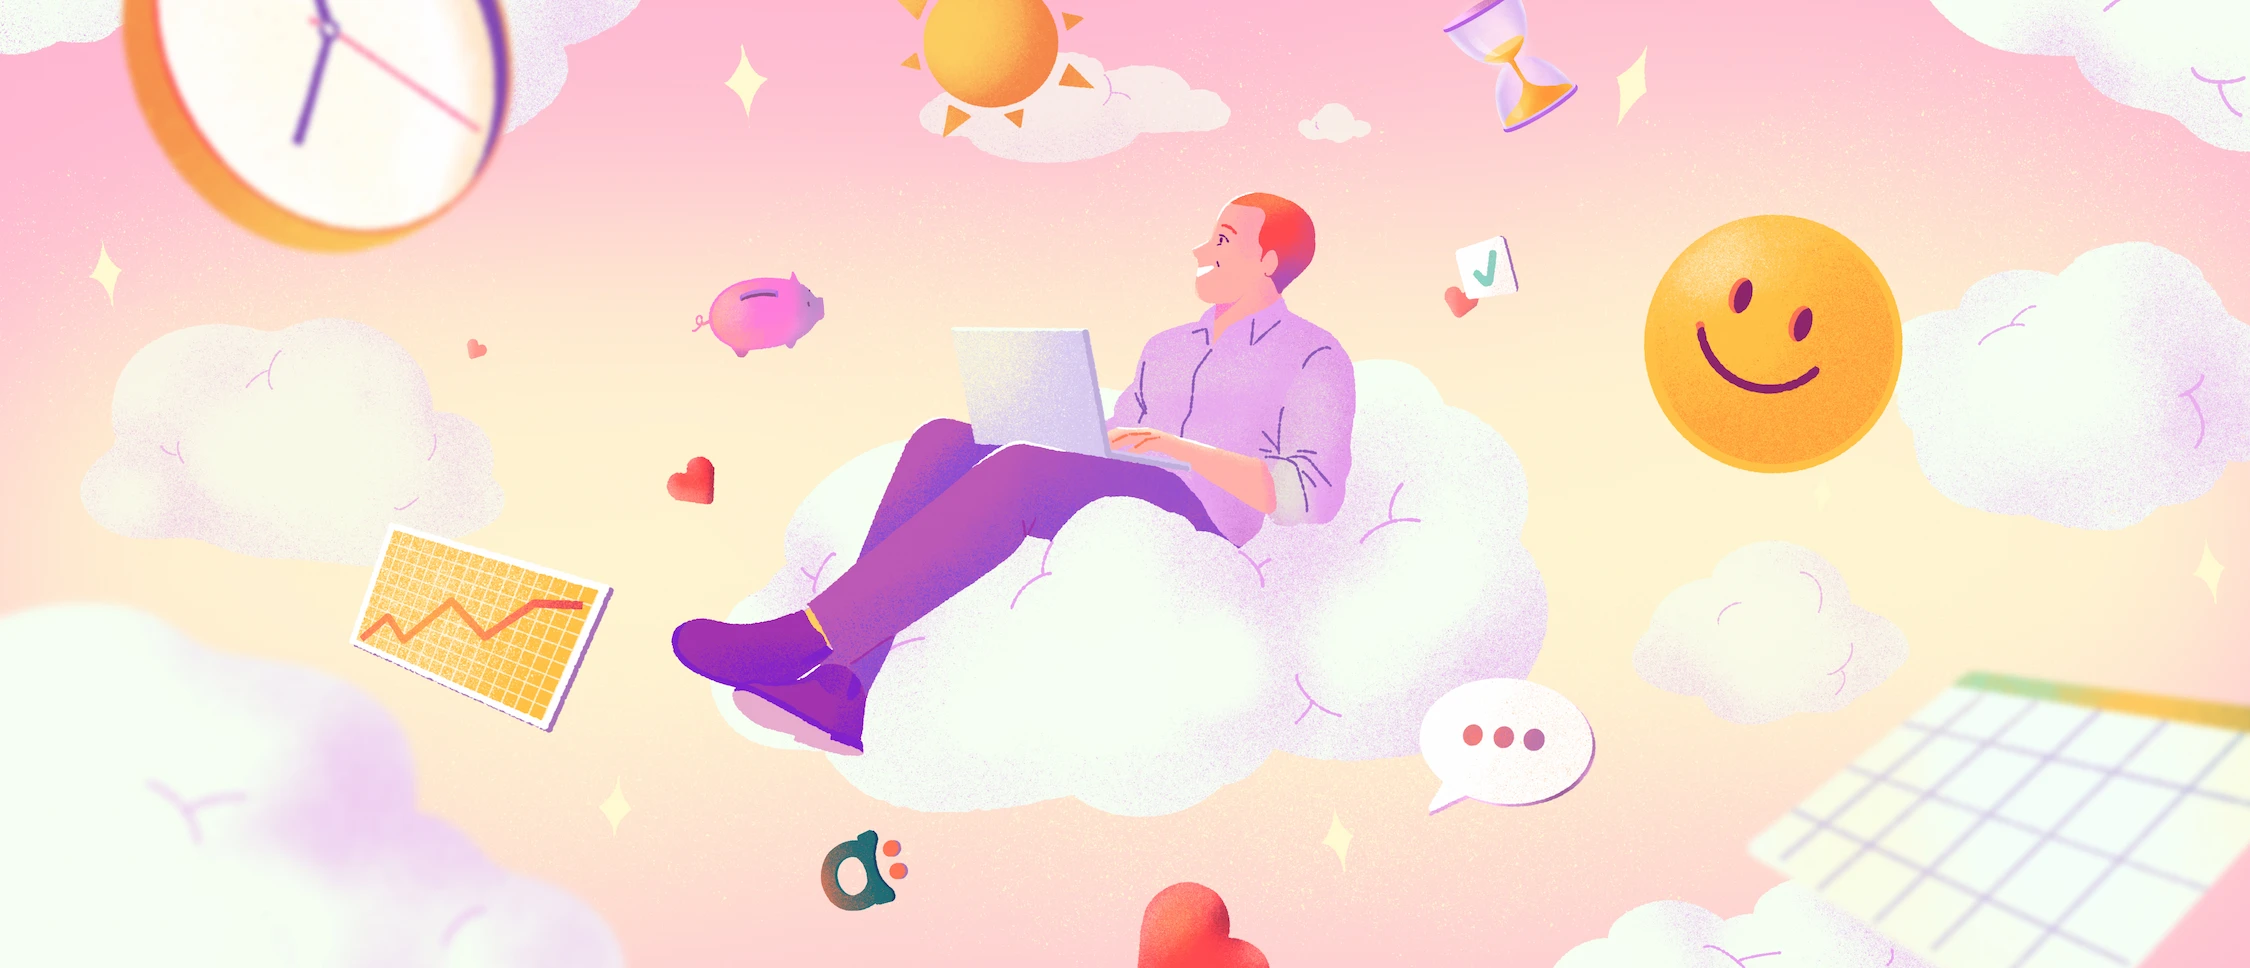 Homme assis sur un nuage avec un ordinateur portable sur les genoux, entouré d'éléments flottants : horloge, smiley, nuages, graphiques.